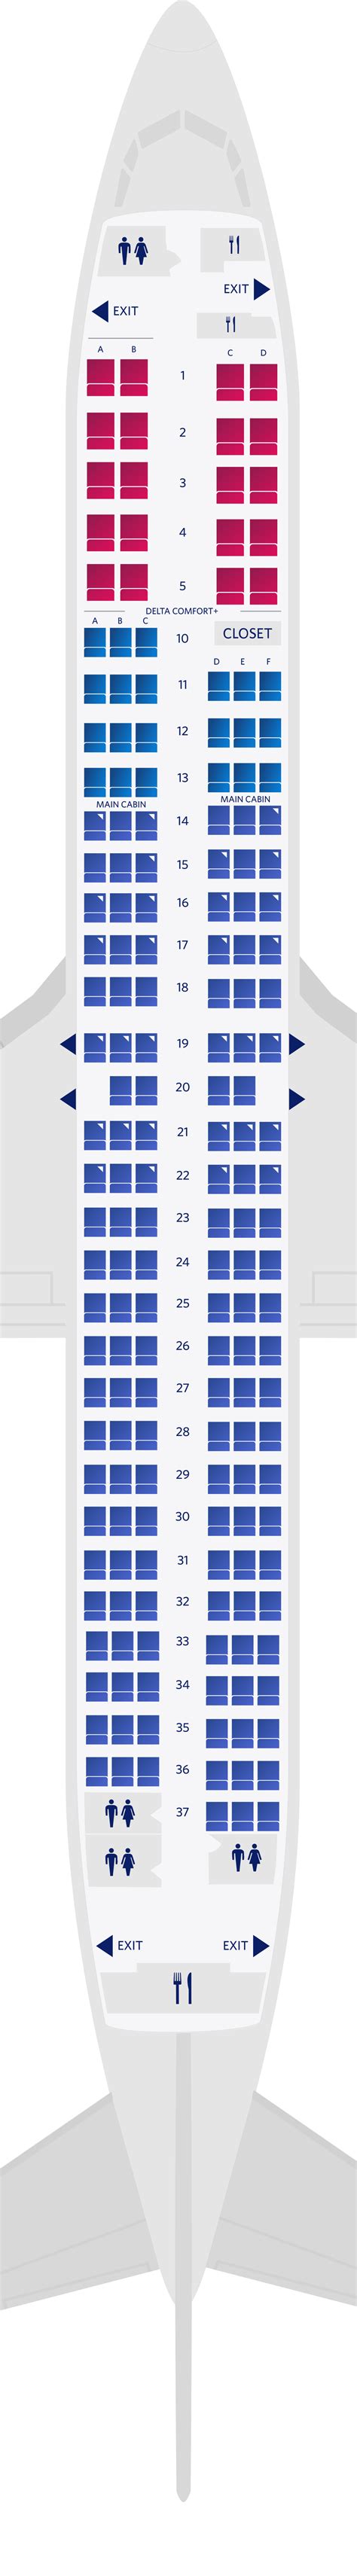 boeing 737 900 seating plan